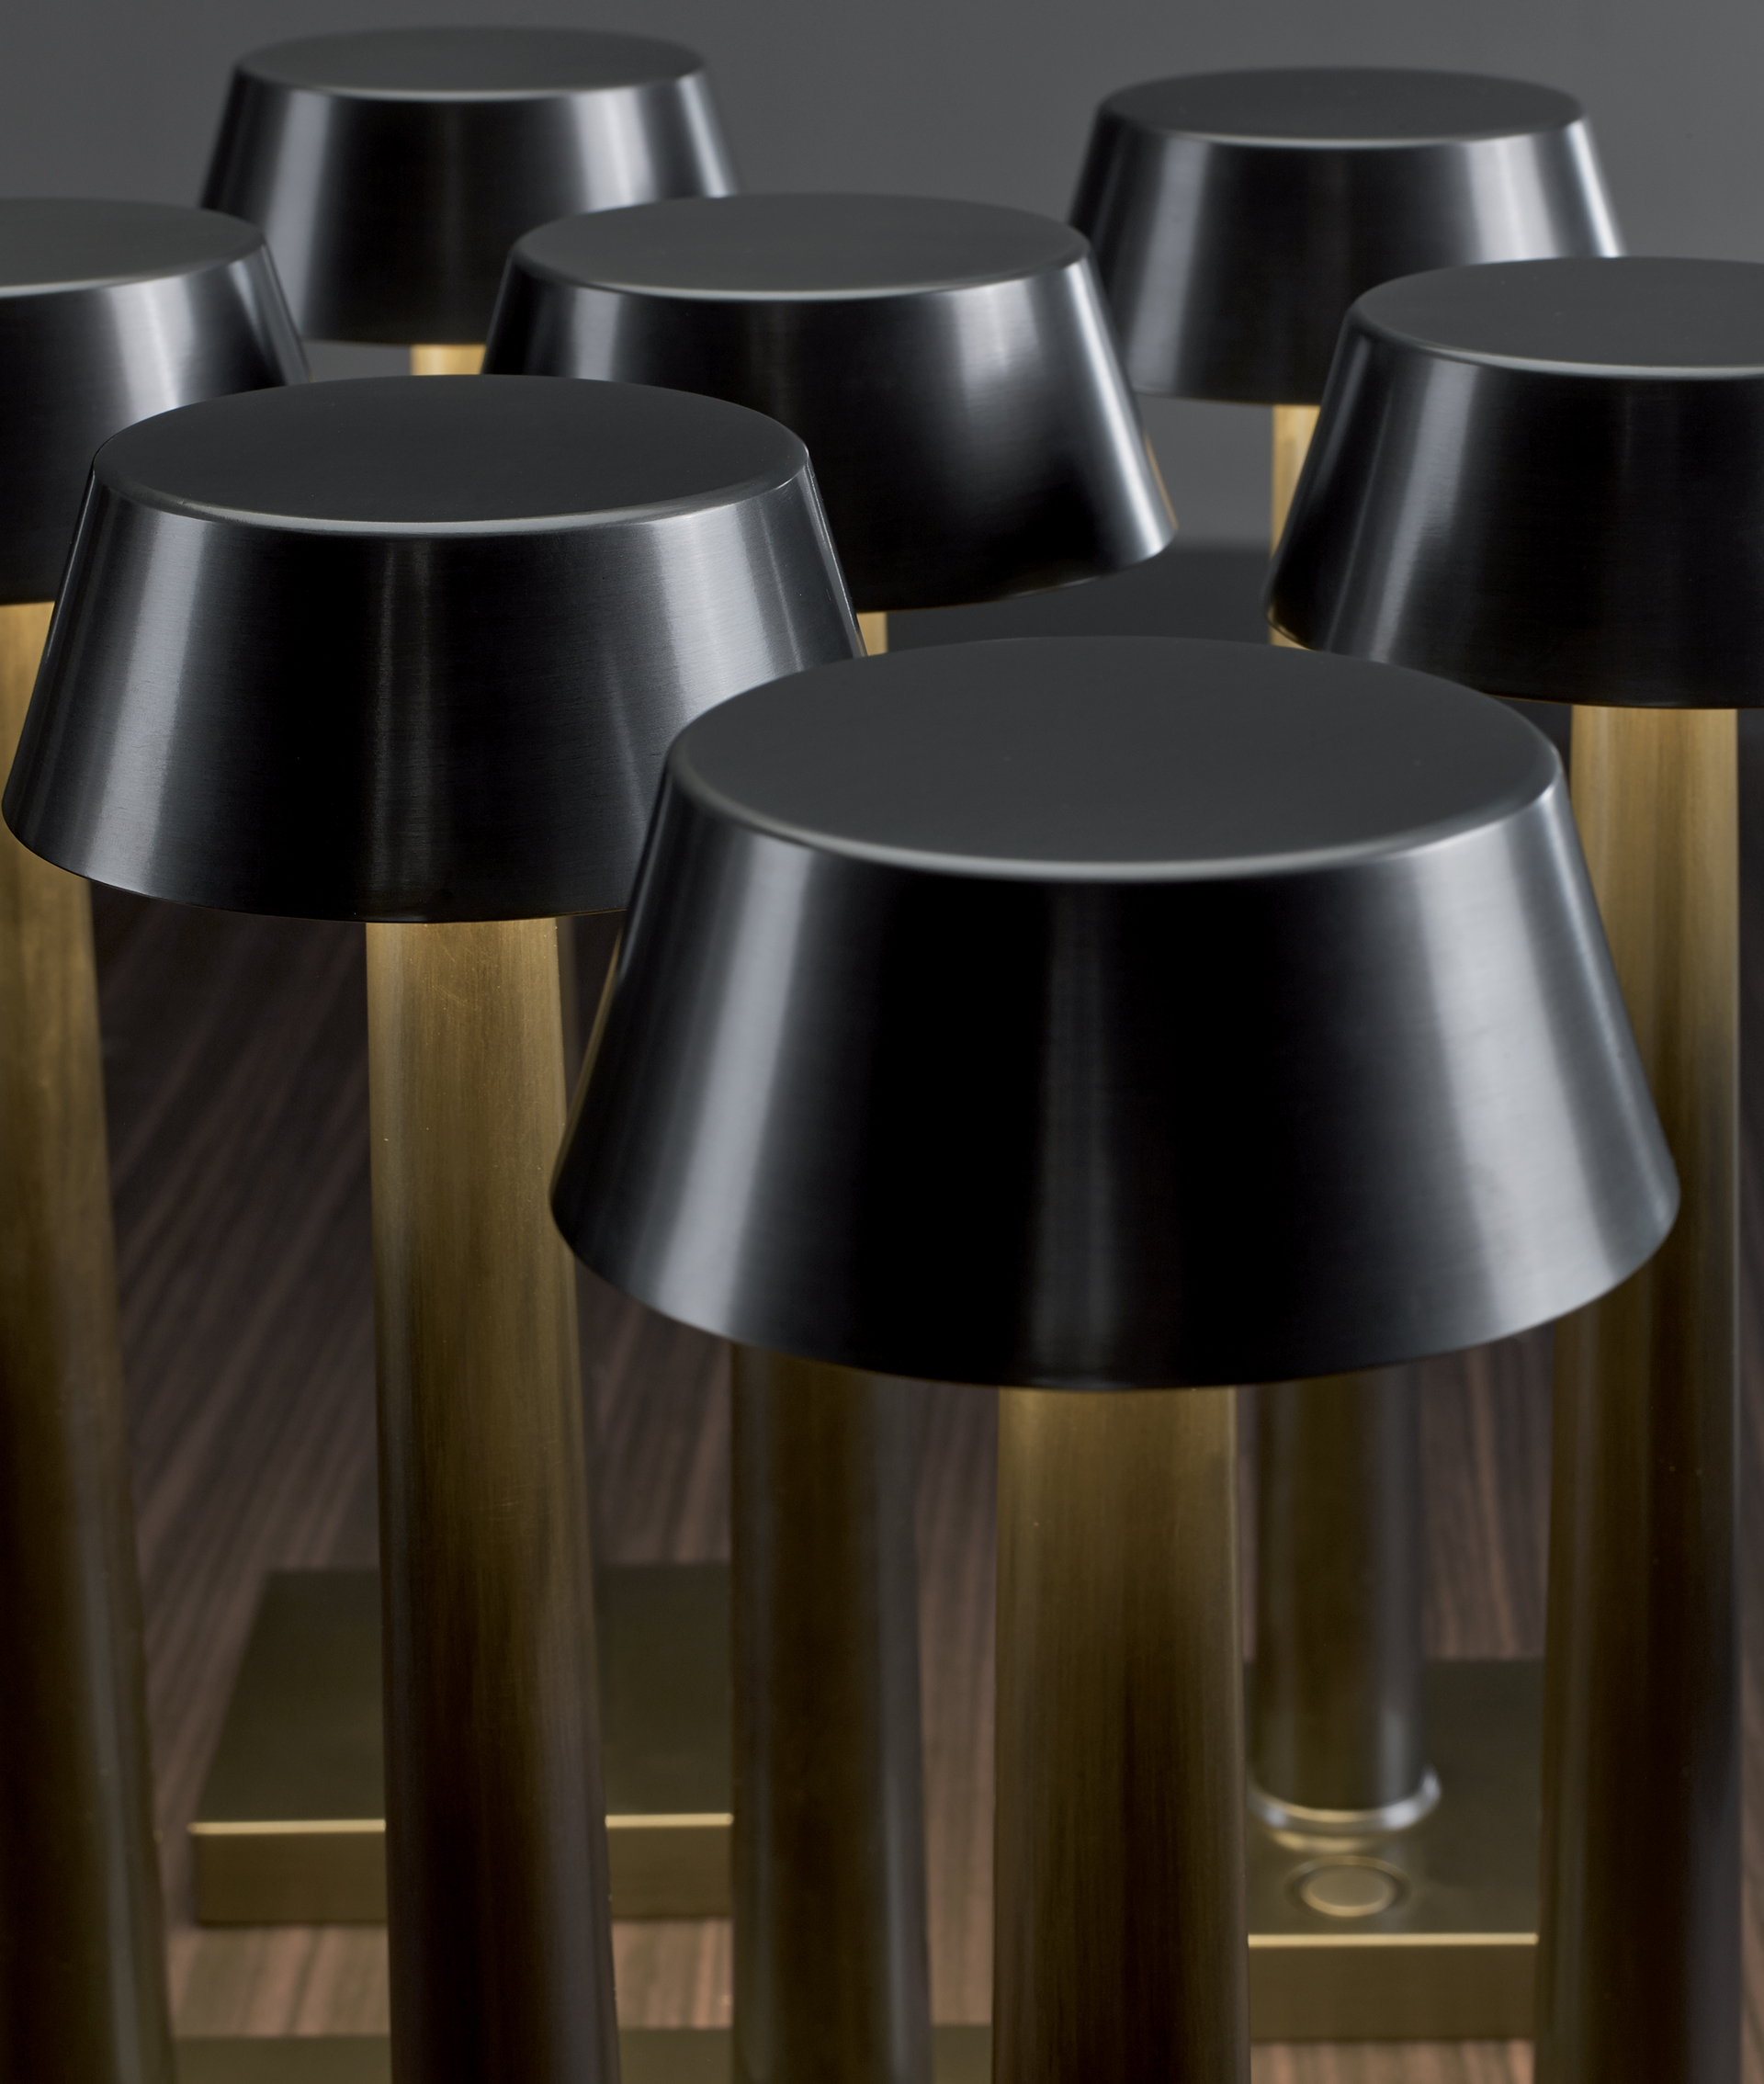 Fiammetta è una lampada da tavolo a LED portatile con struttura in bronzo e accensione al tocco, del catalogo di Promemoria | Promemoria